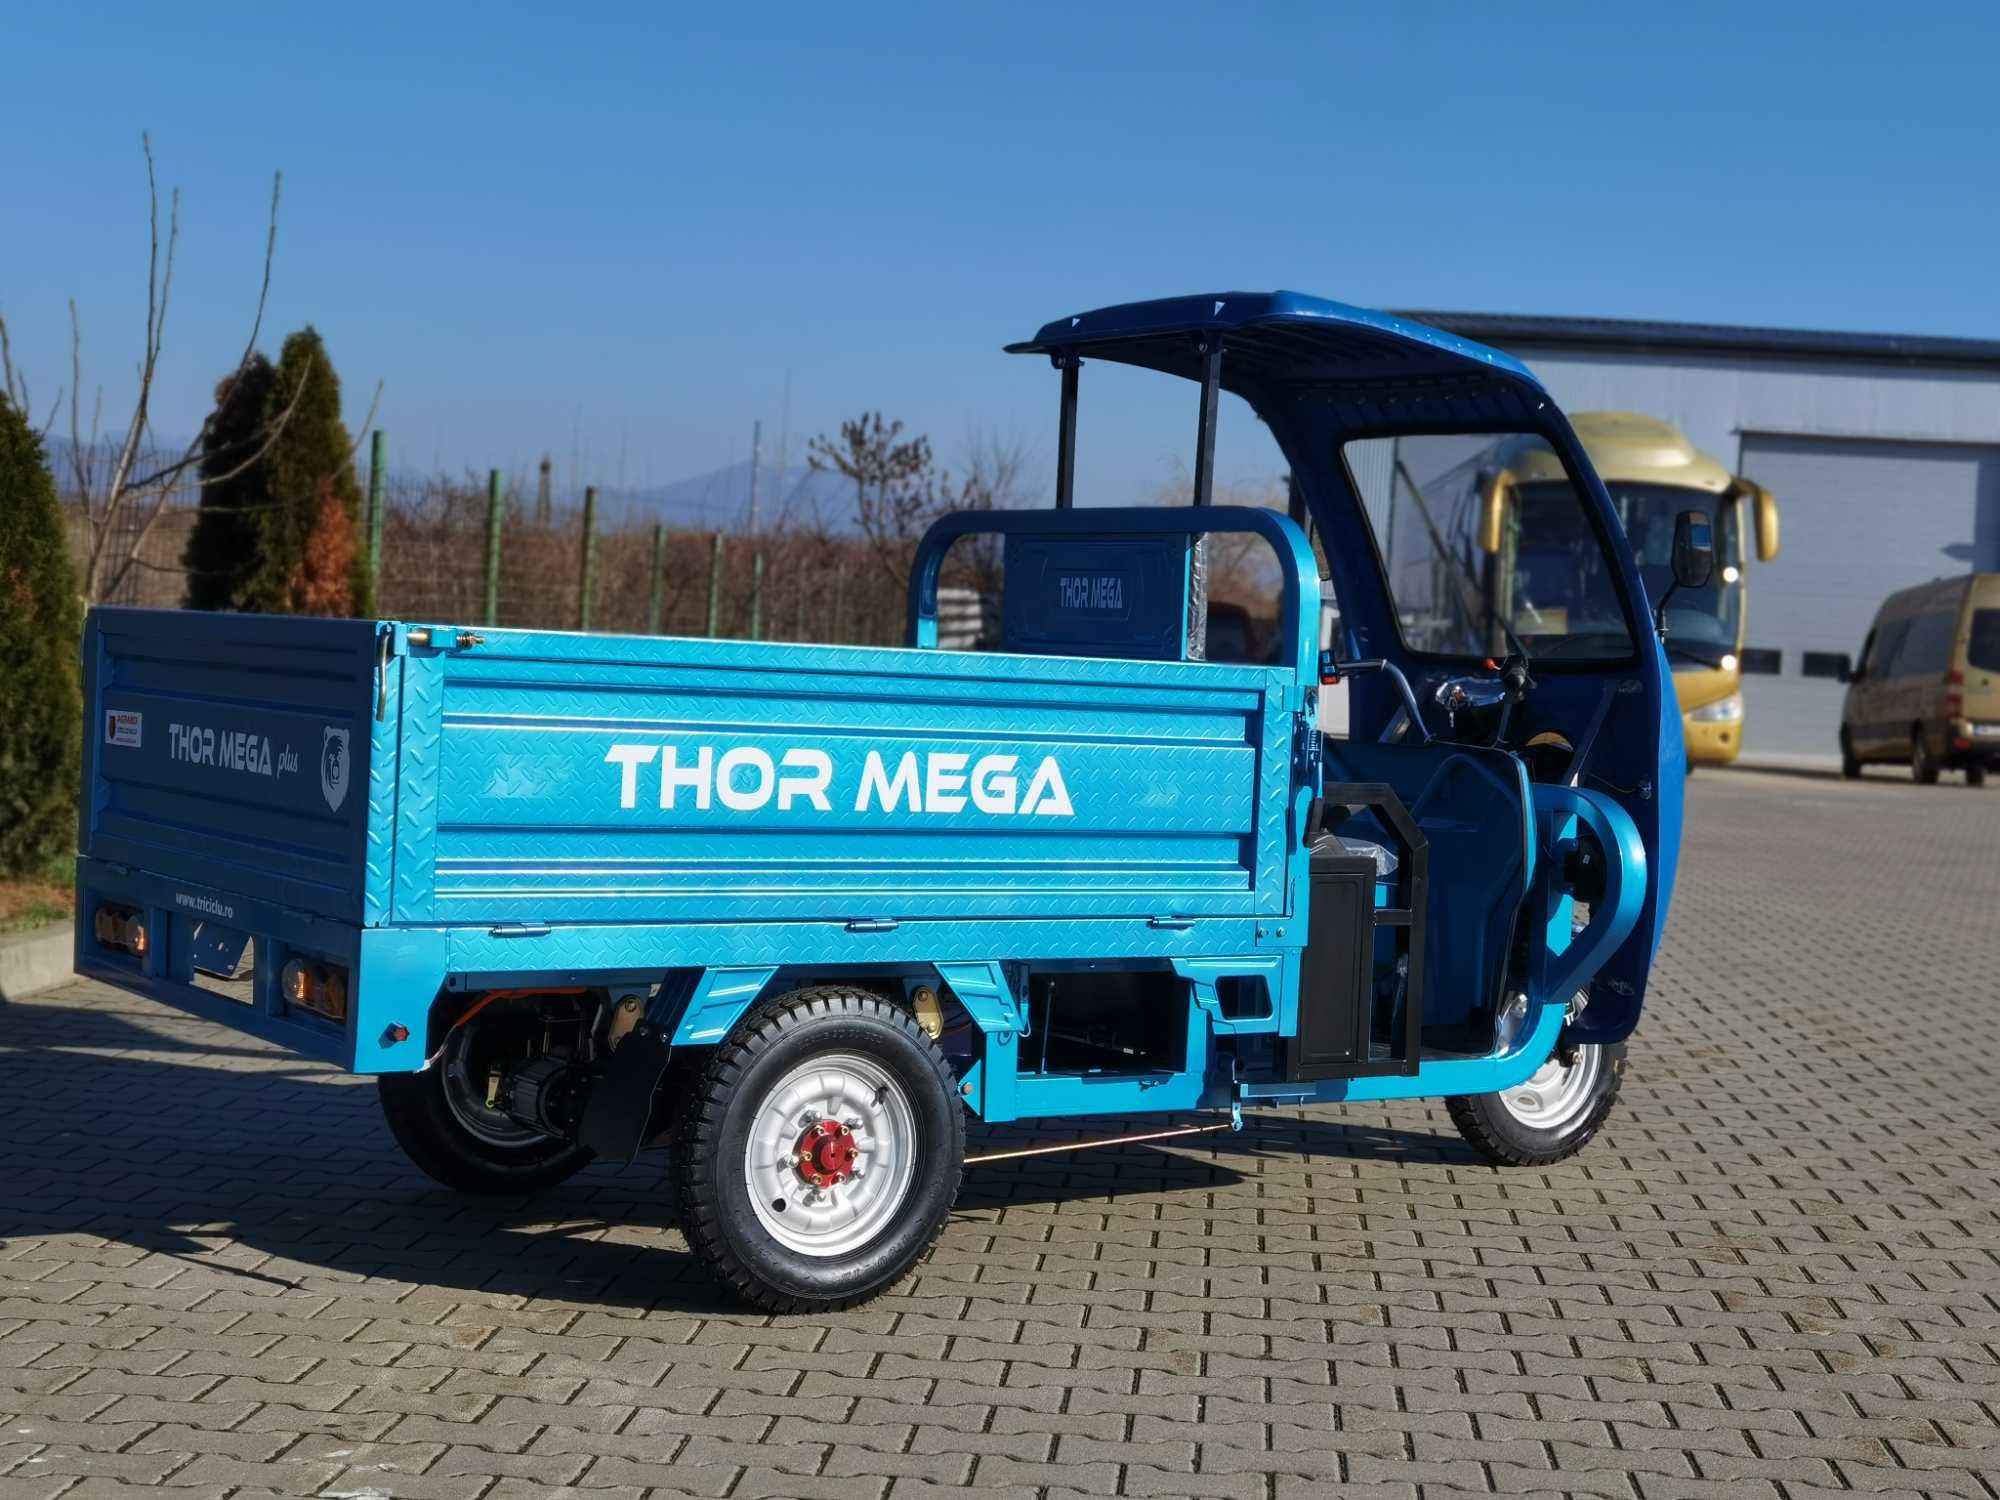 Triciclu electric Thor MEGAPlus 2000W cu cabina nou Agramix